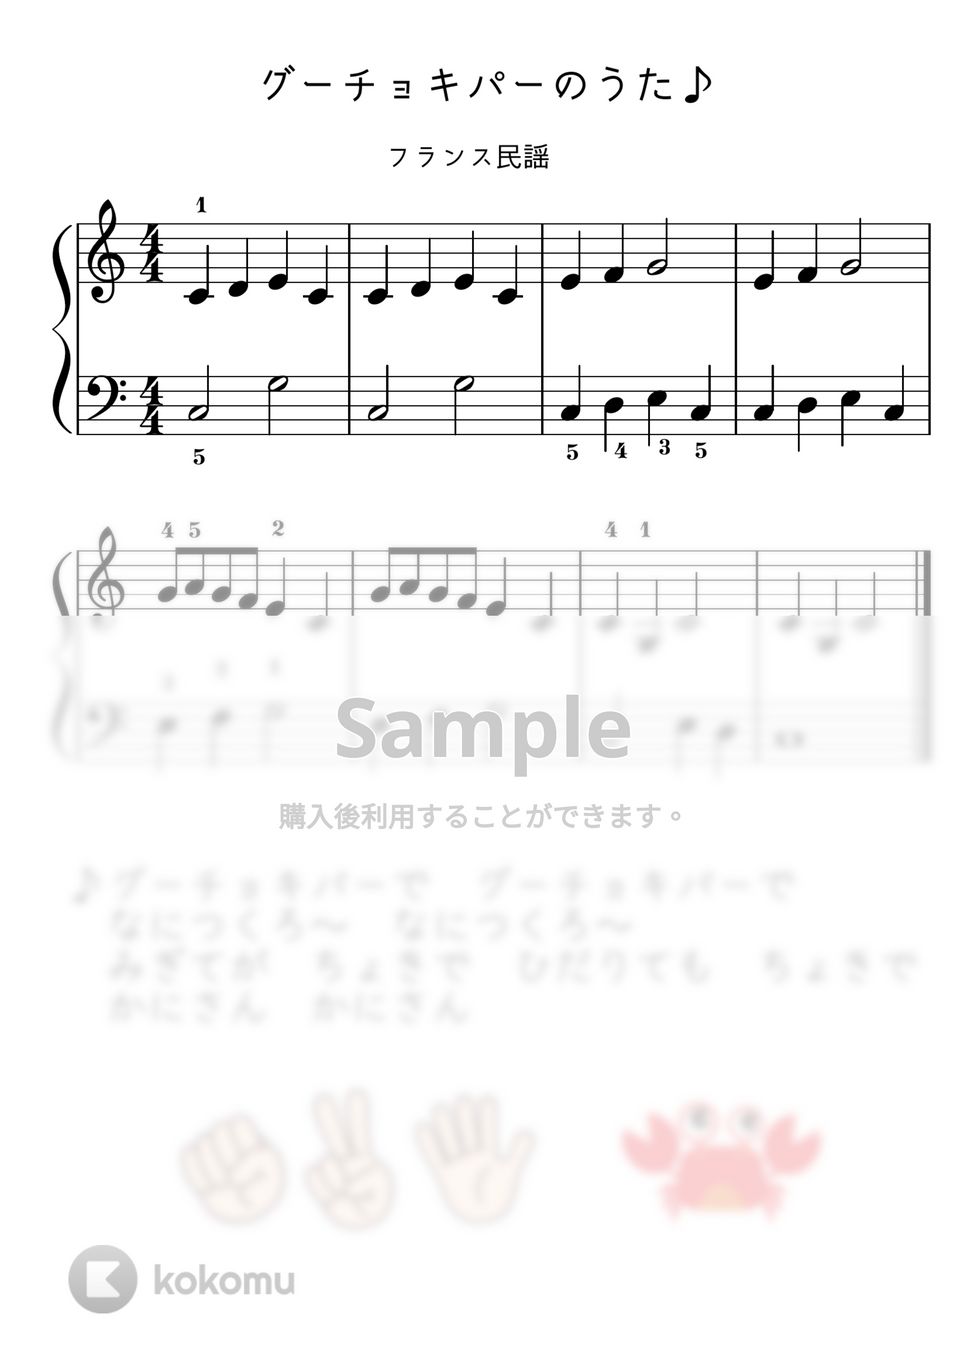 【初級】グーチョキパーのうた（フレール・ジャック） by ピアノのせんせいの楽譜集